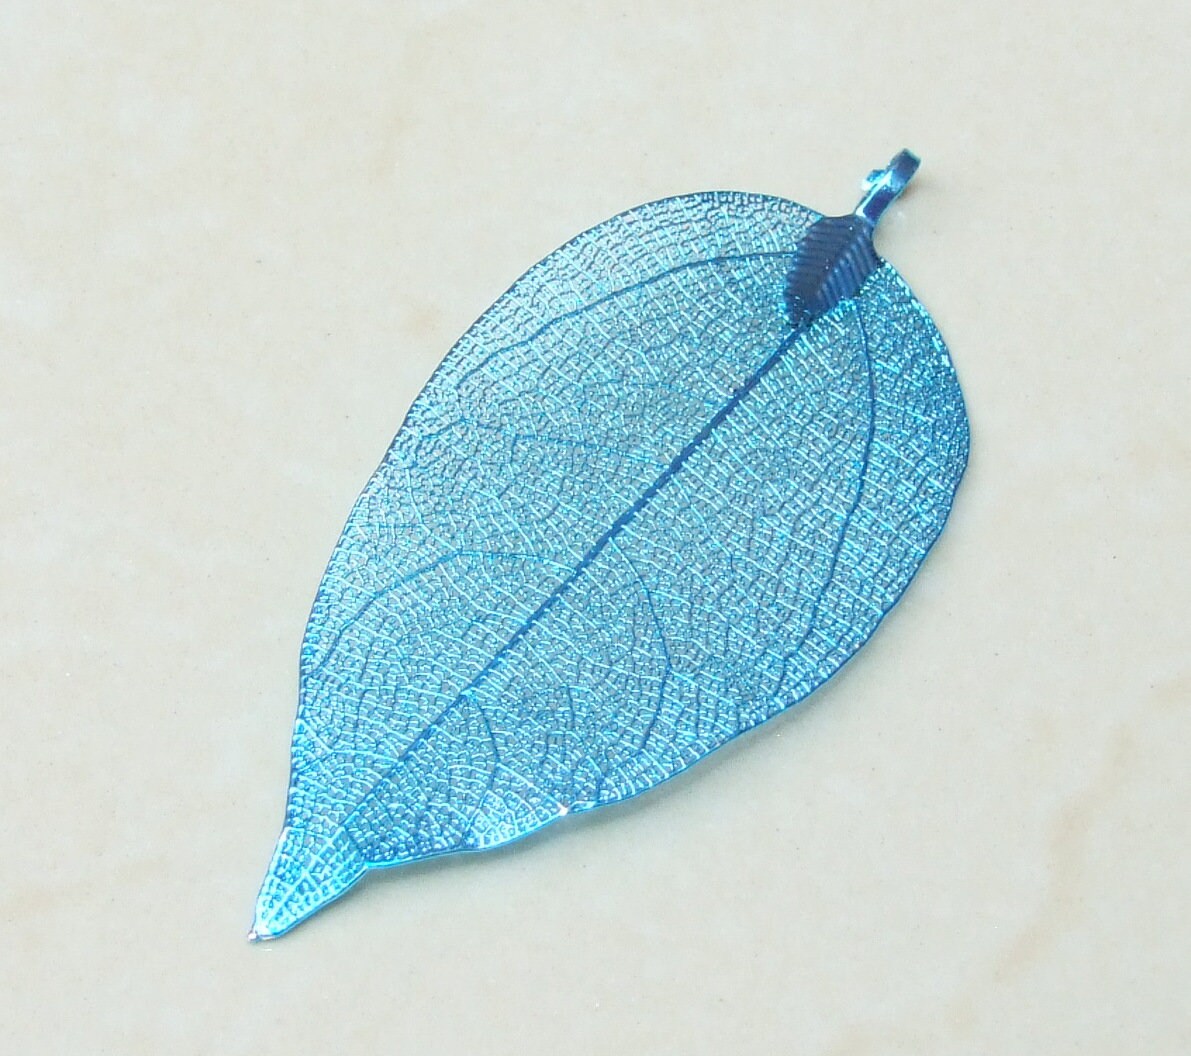 Liquid Metal Leaf Pendant - Large Leaf Pendant - Autumn Leaf - Blue - BOHO - Tribal - 32mm x 66mm - 2256